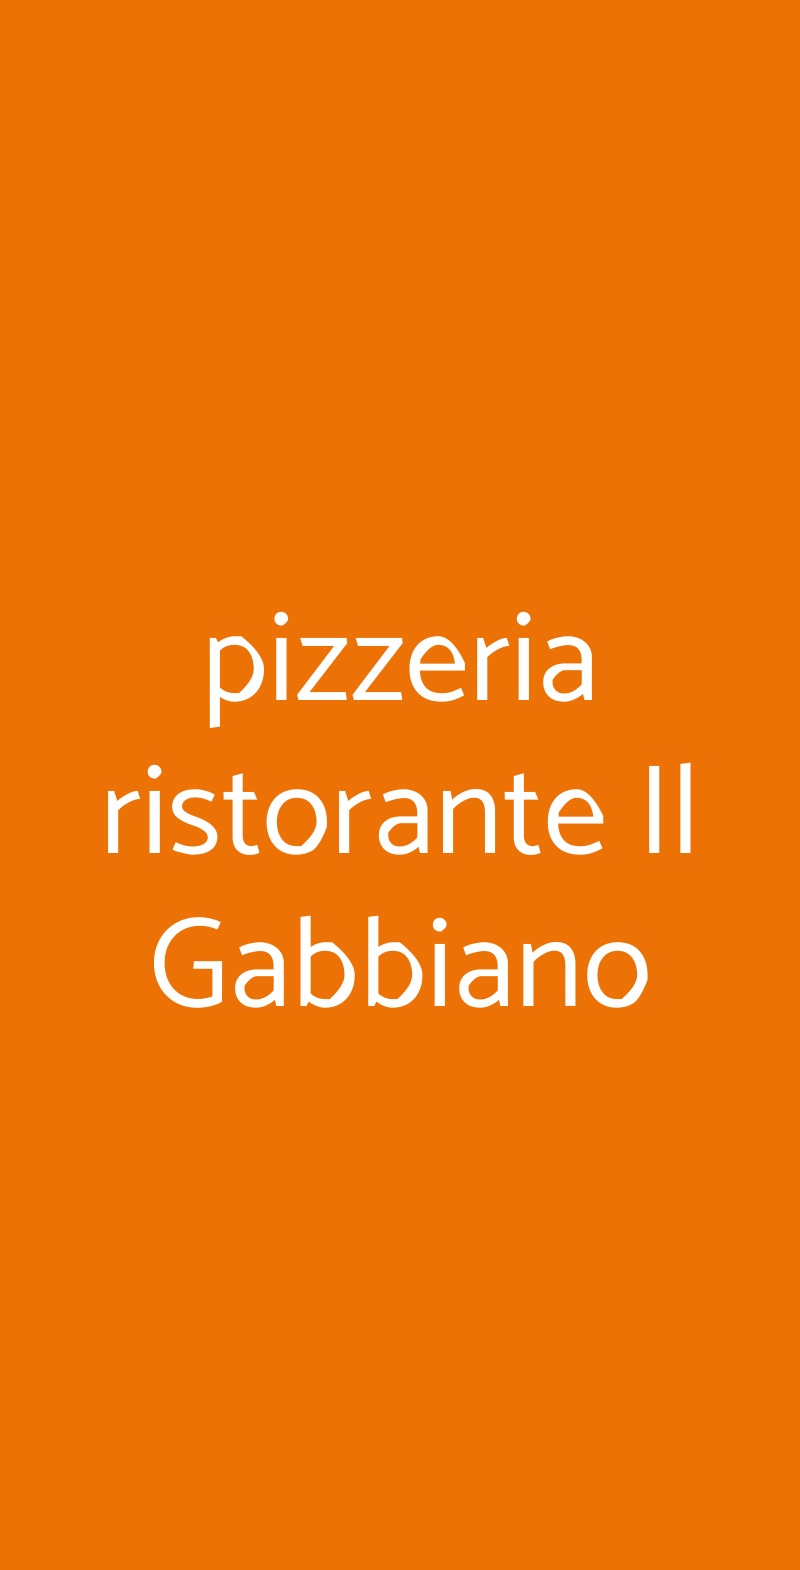 pizzeria ristorante Il Gabbiano Gussago menù 1 pagina